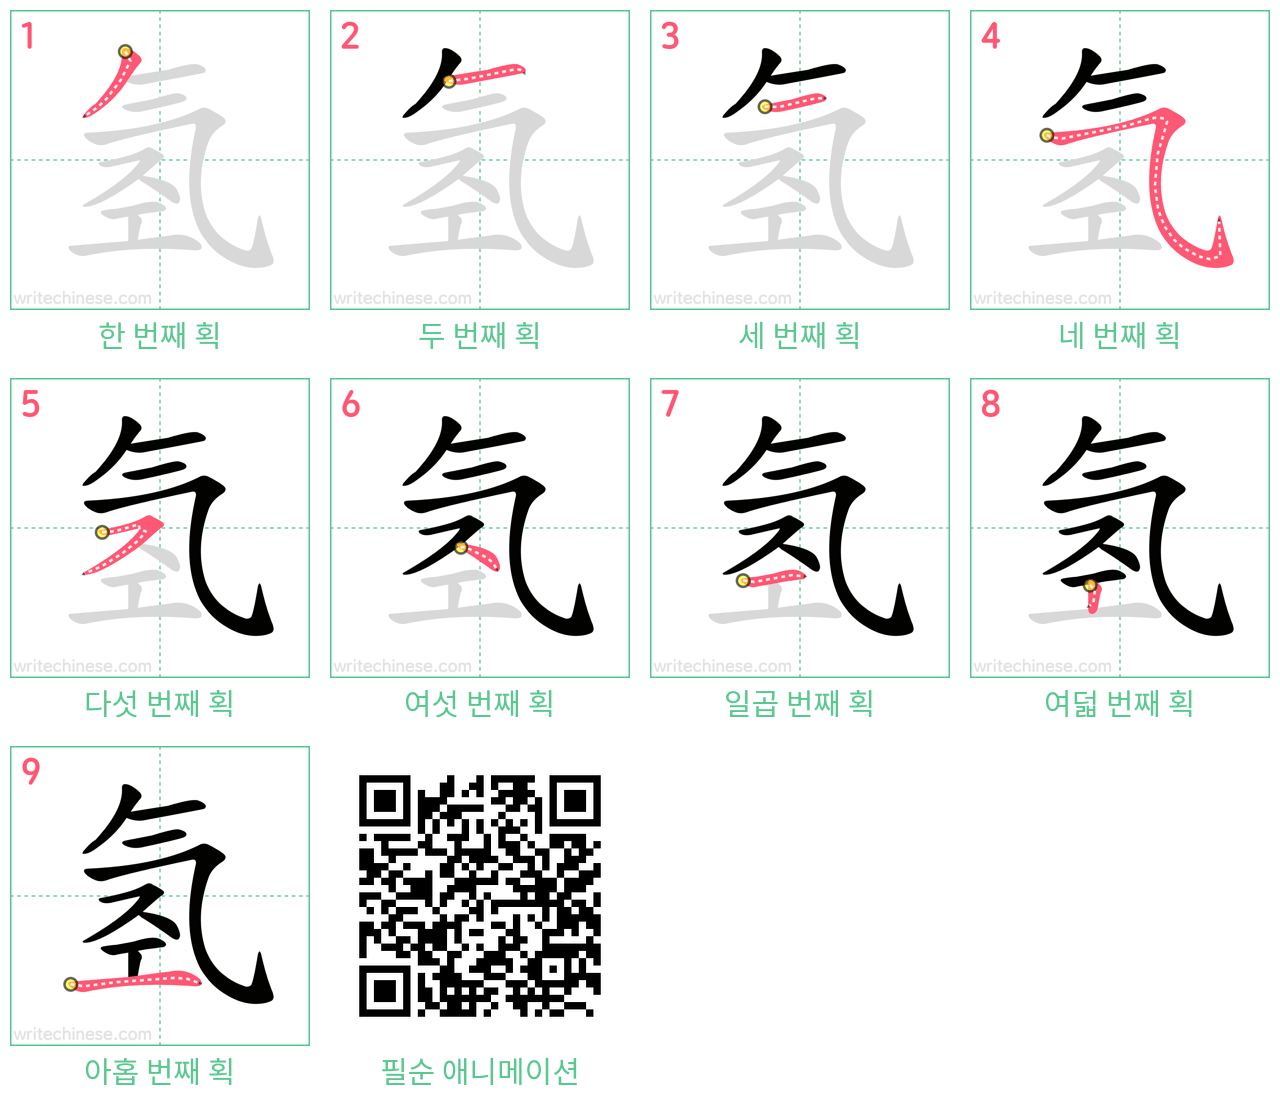 氢 step-by-step stroke order diagrams